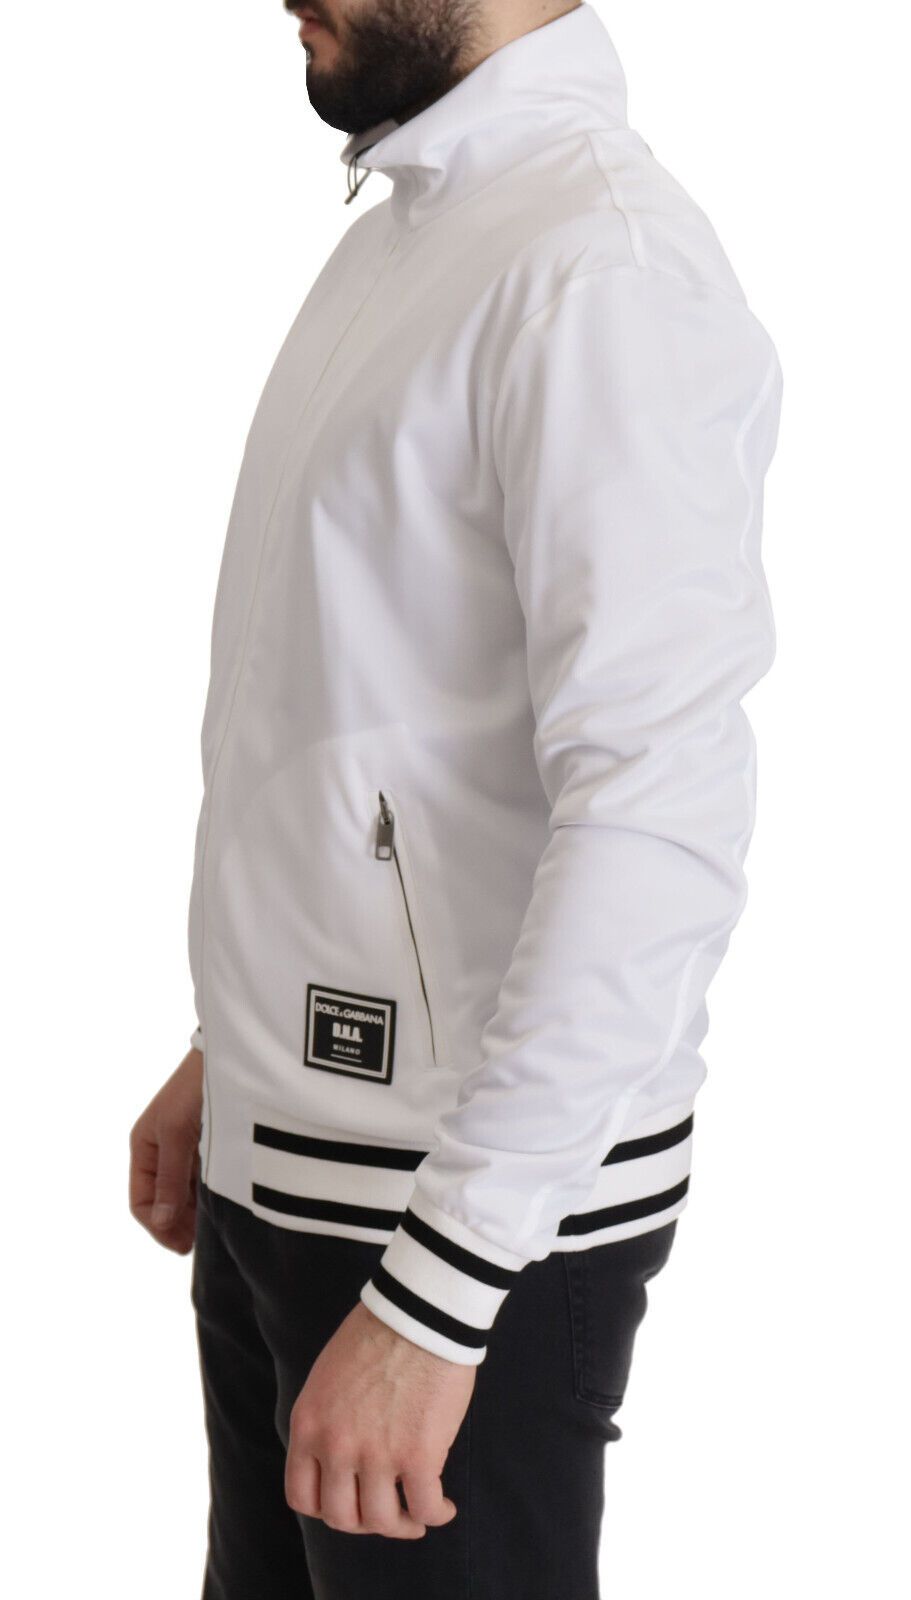 Sleek White Zip Sweater for Men